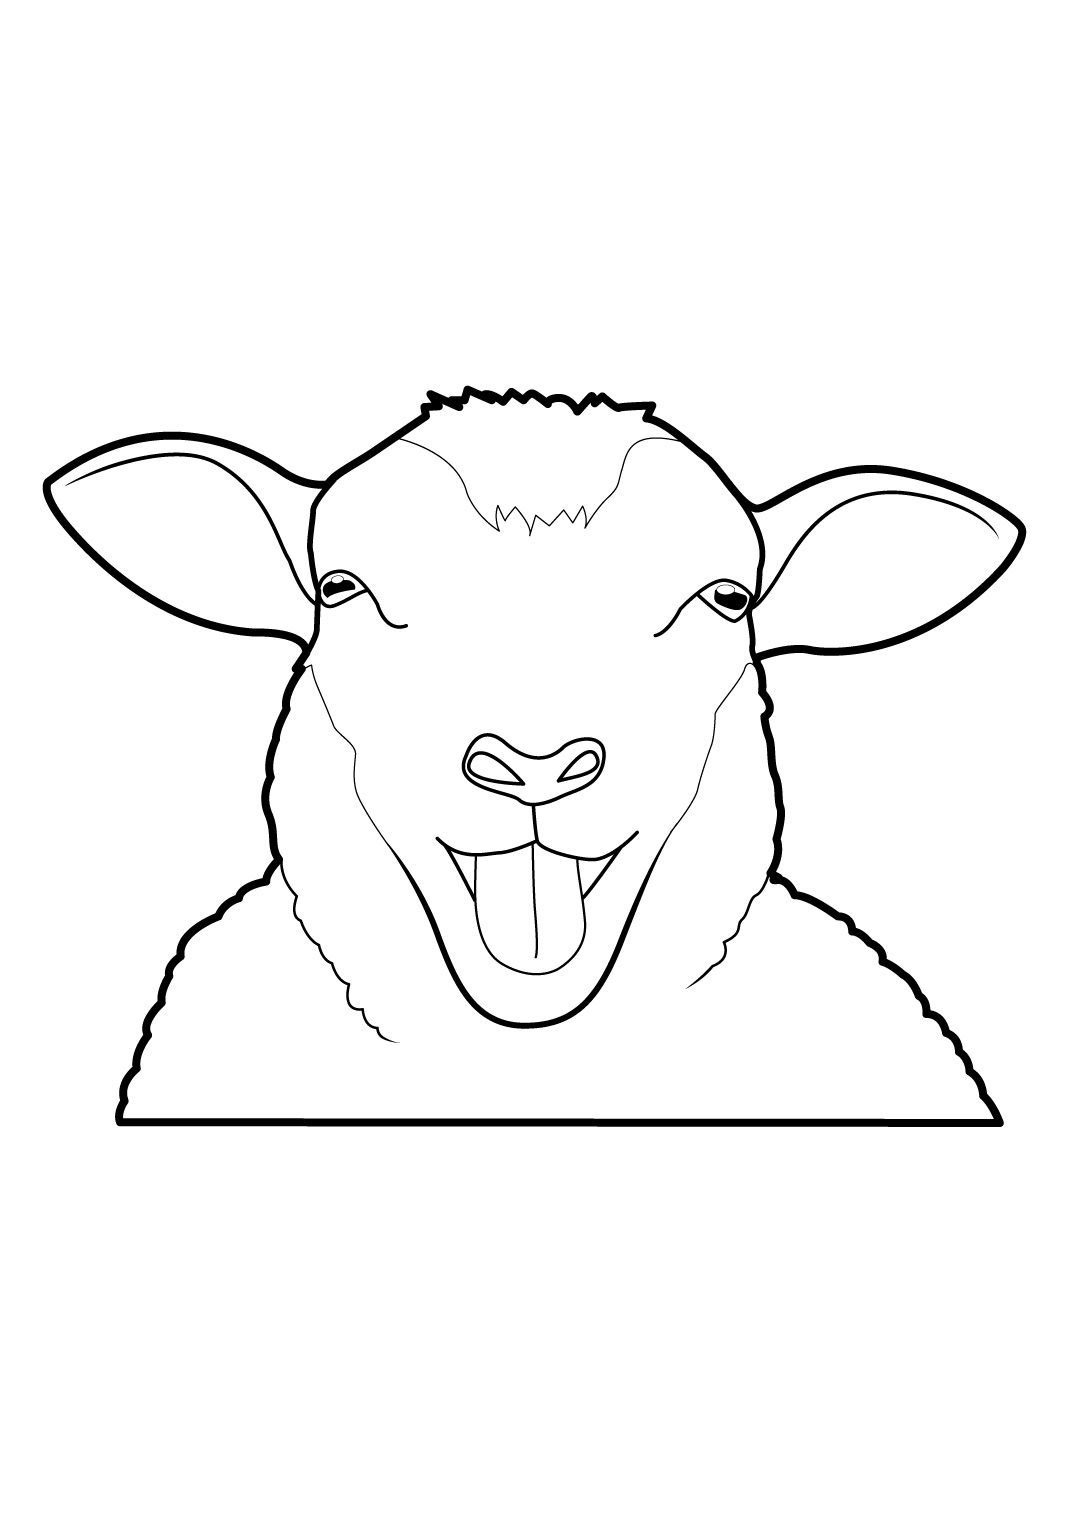 Coloriage Mouton 2 - Coloriage Moutons - Coloriages Animaux destiné Dessin Mouton 